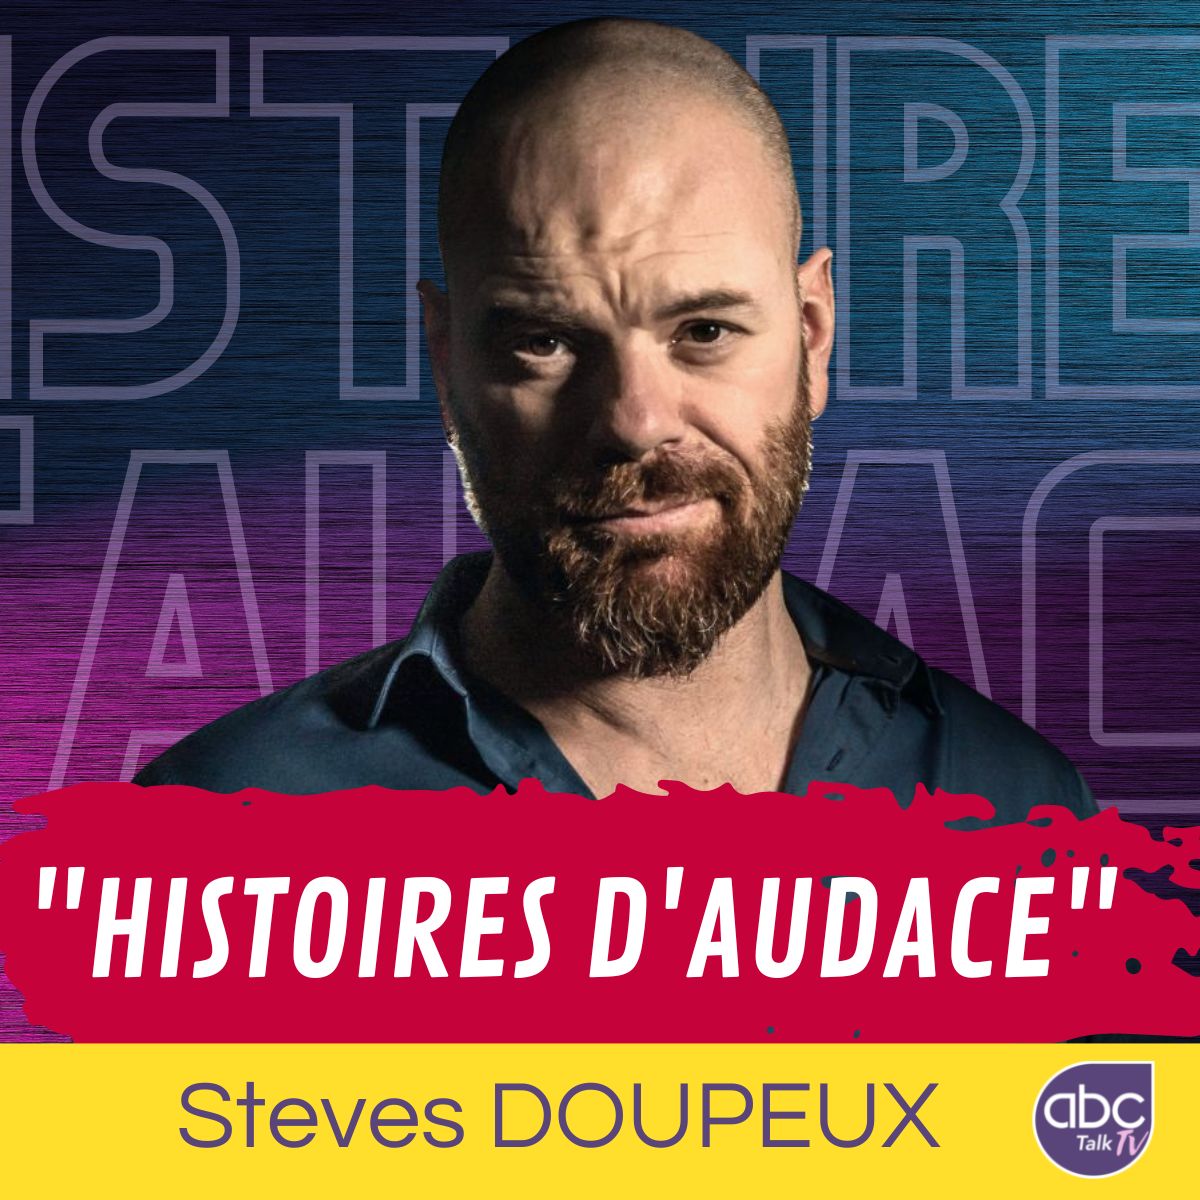 Steves DOUPEUX Histoires d'audace abctalk CARRE